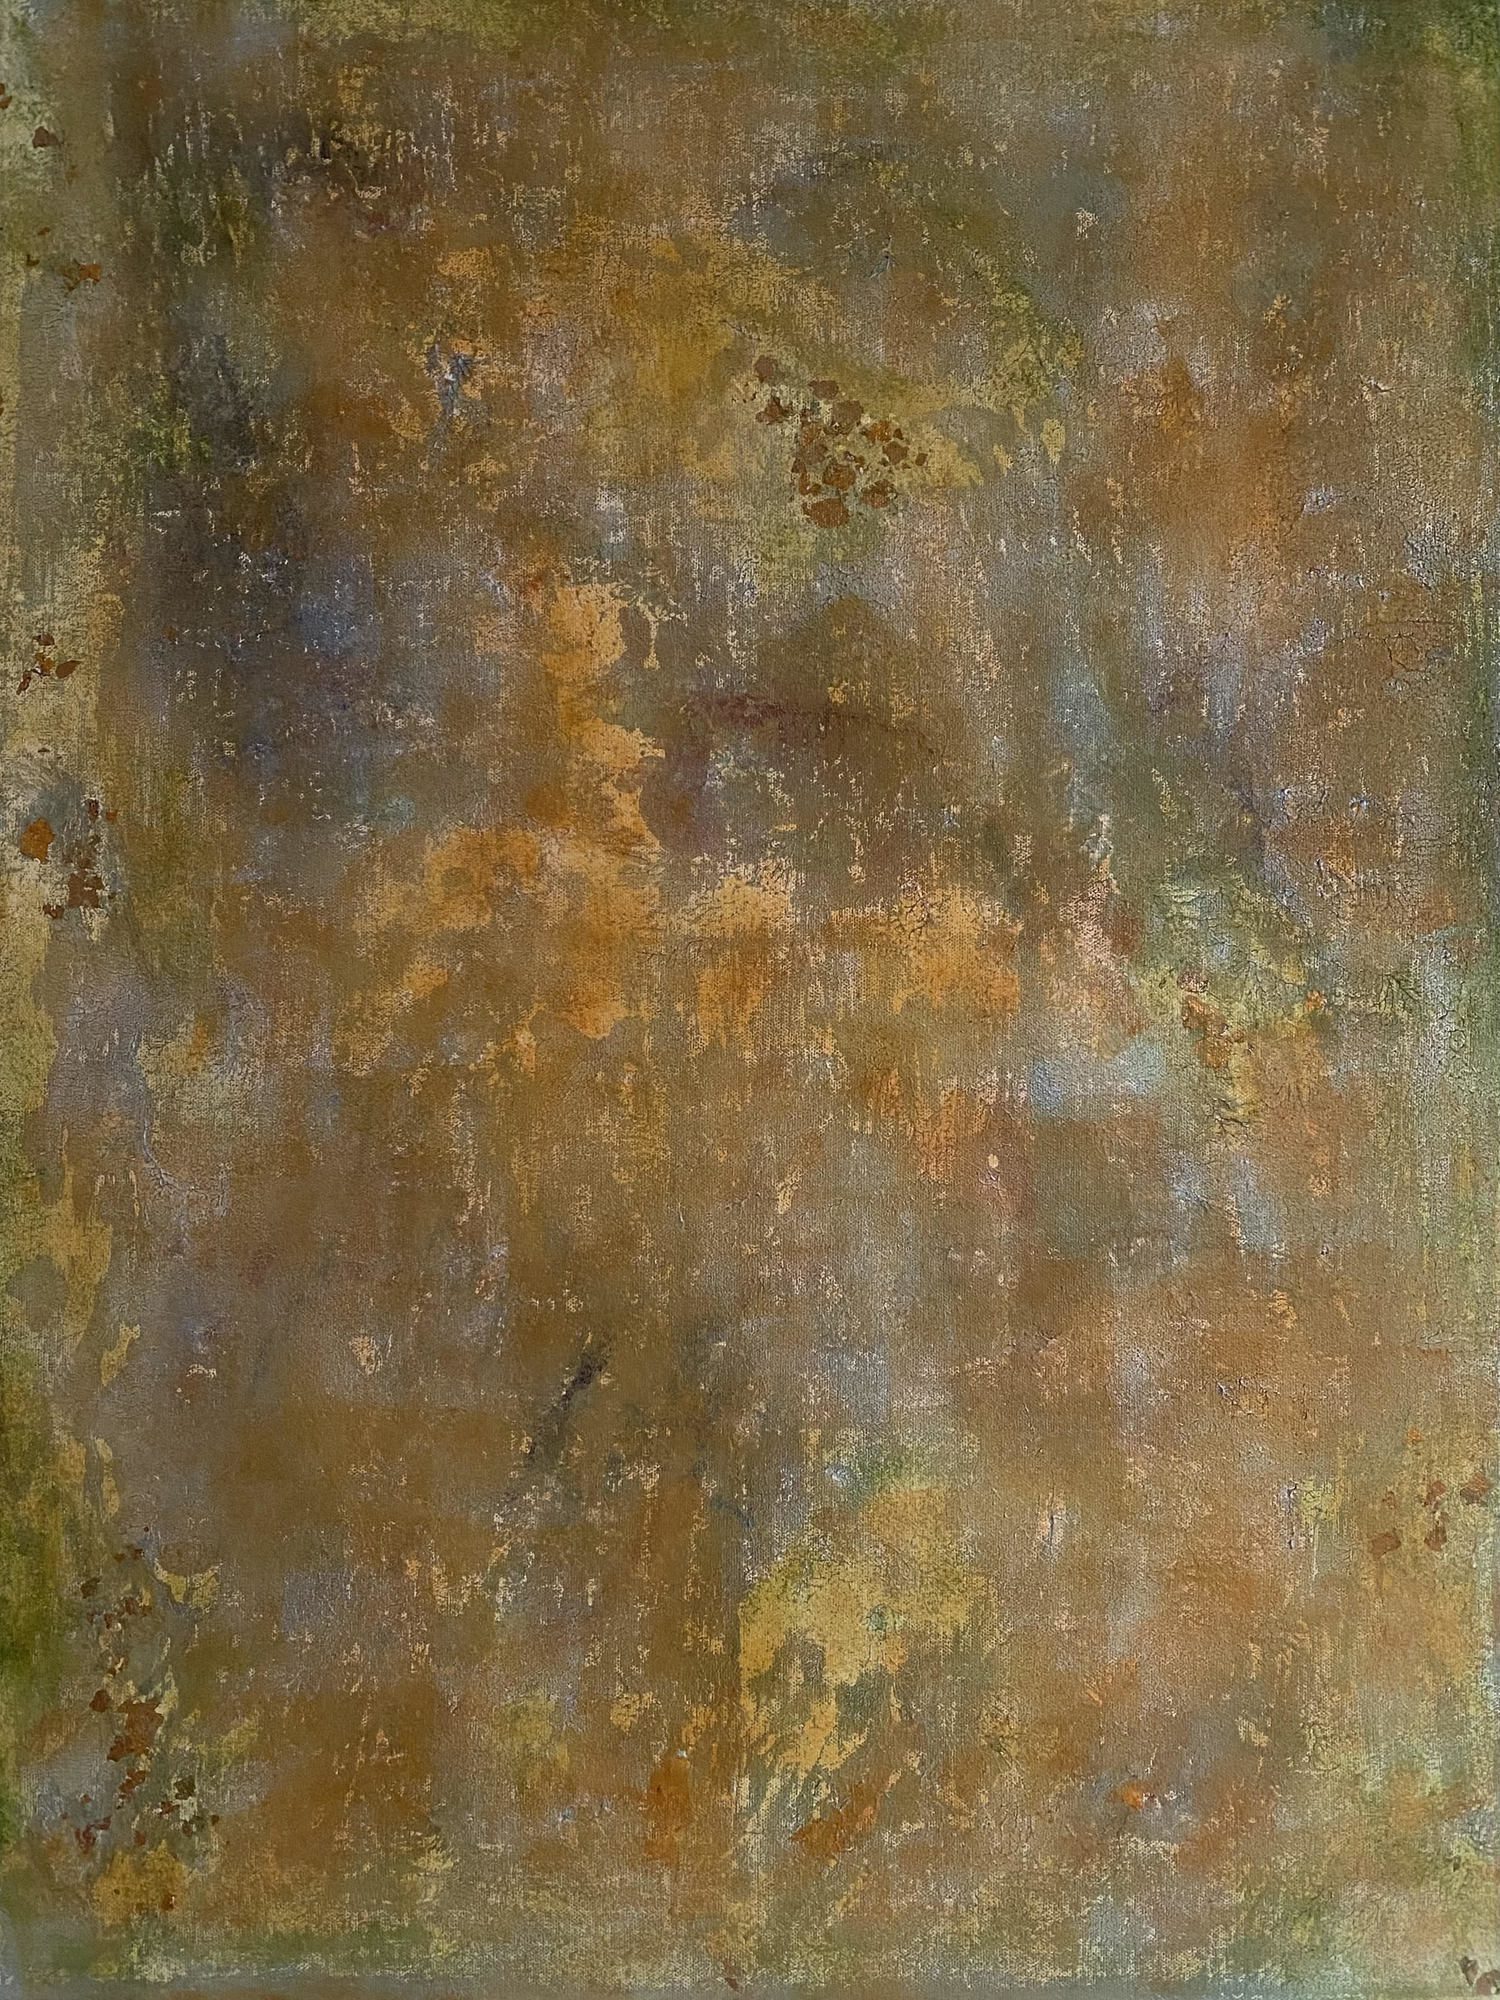 Chameleon, 60x80cm, oil on canvas